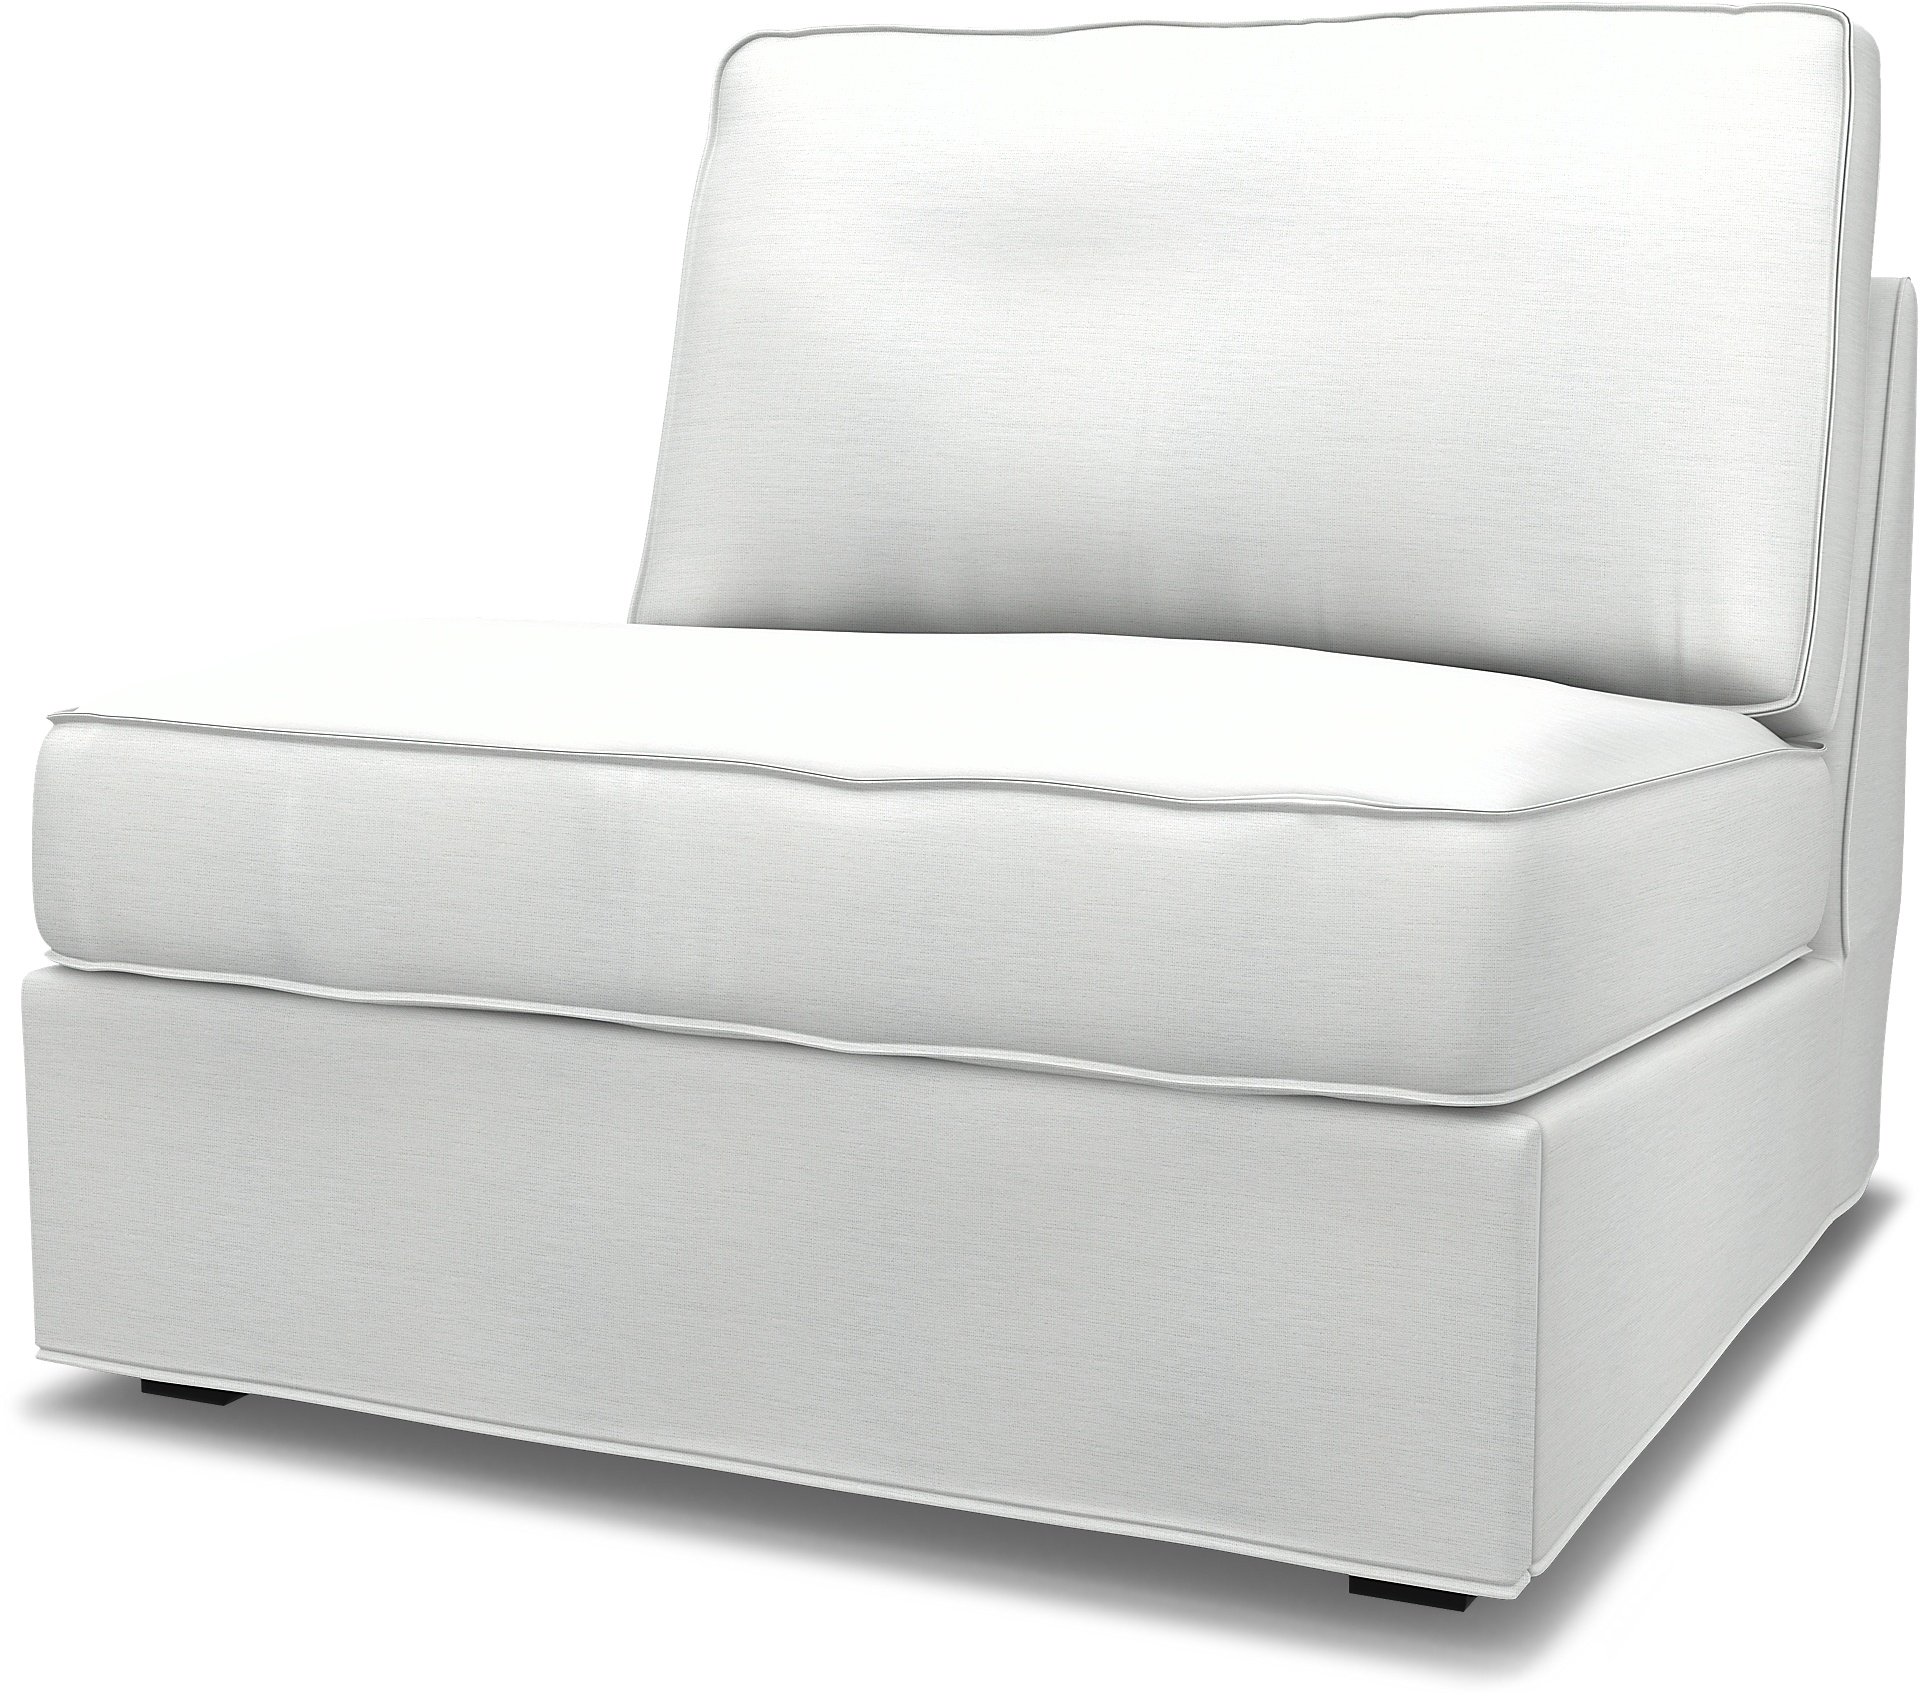 IKEA - Kivik 1 seater sofa bed, White, Linen - Bemz